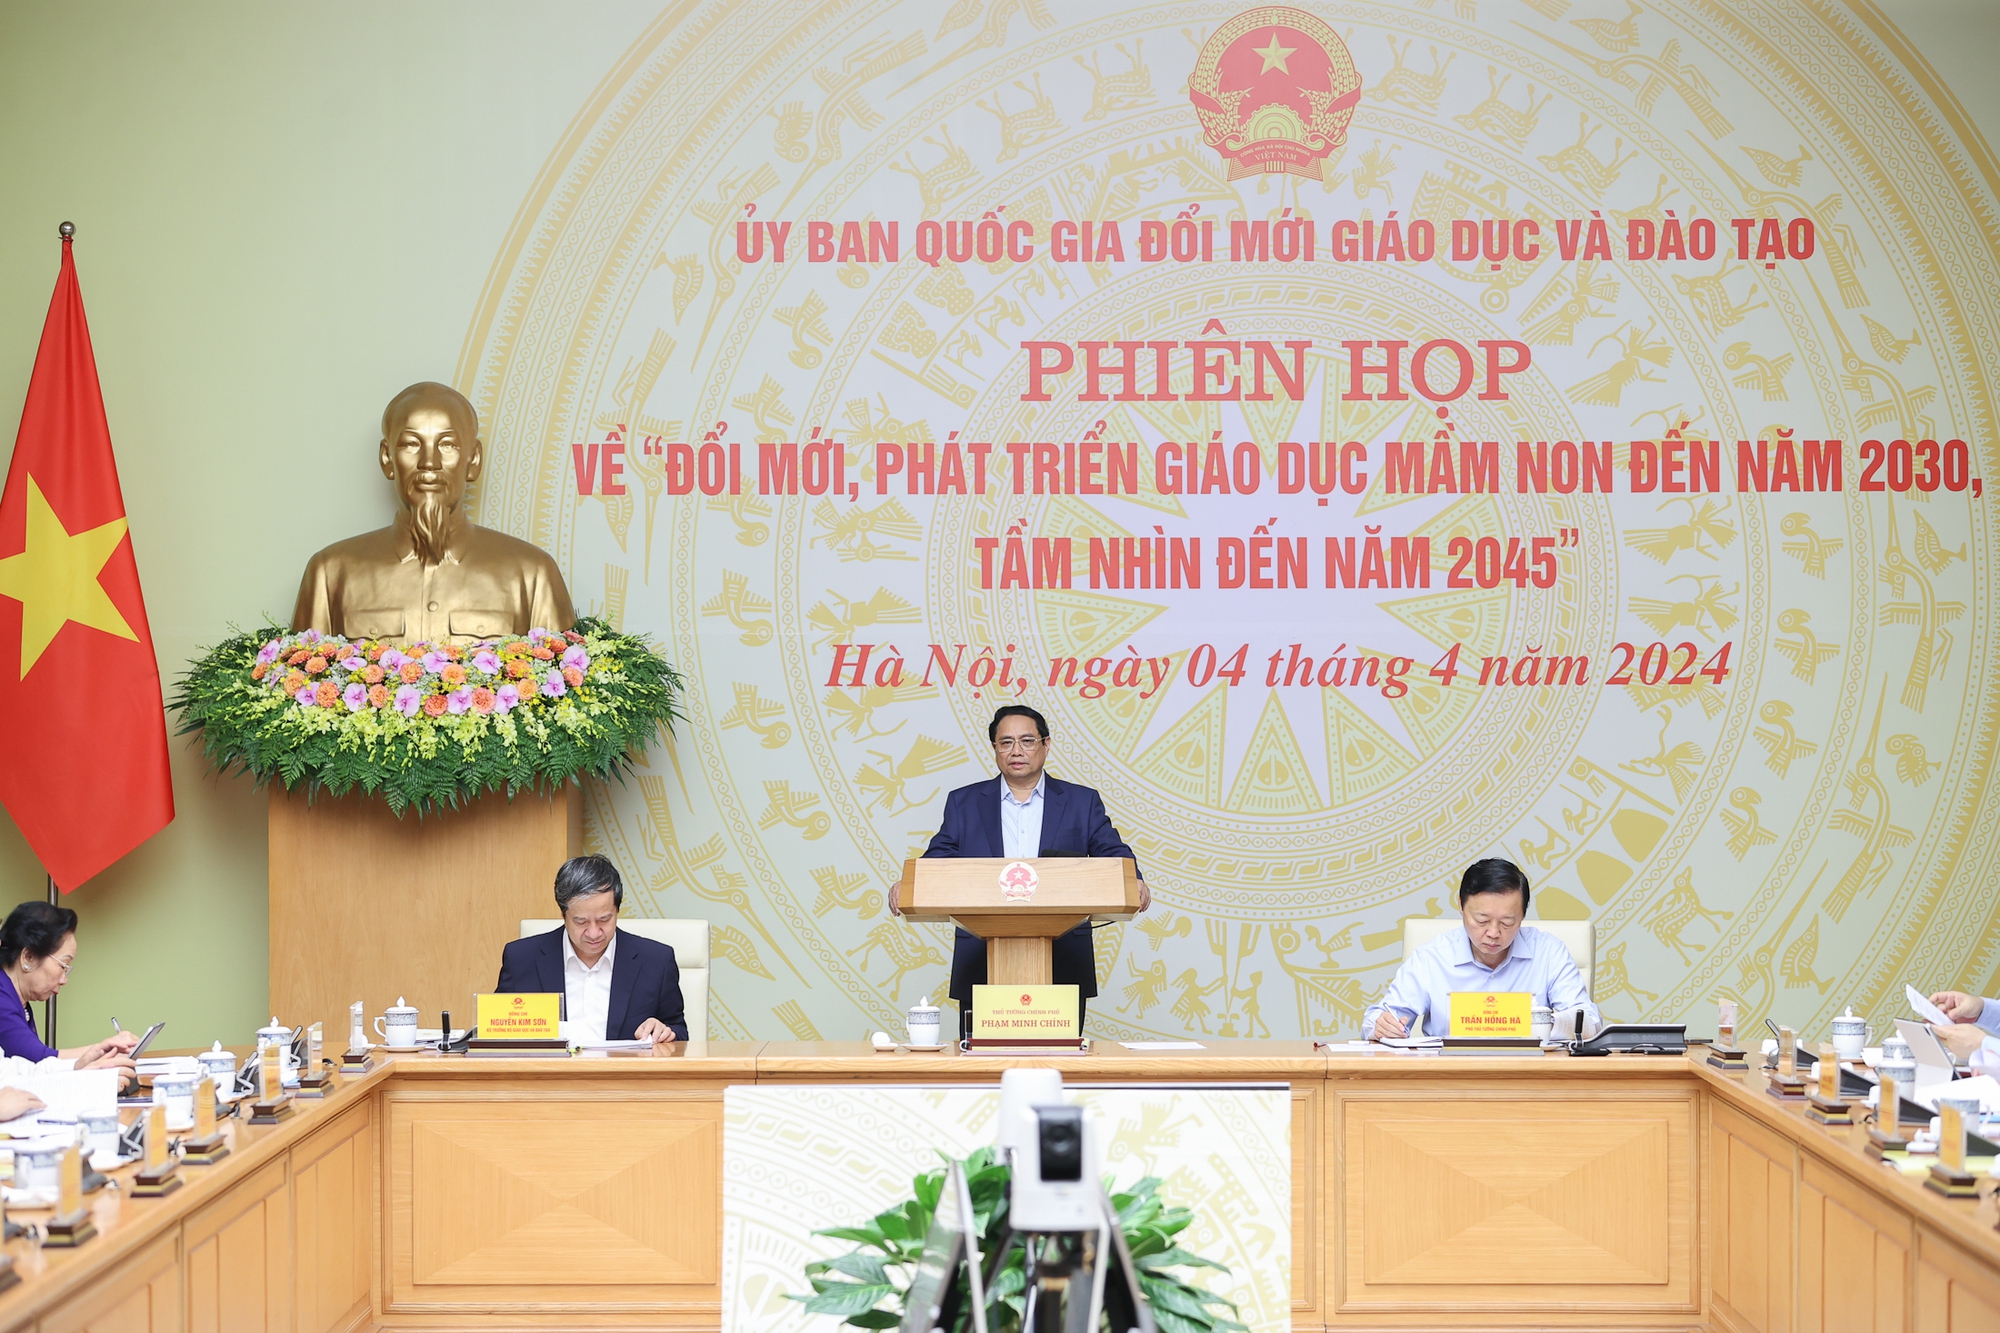 Thủ tướng Phạm Minh Chính chủ trì phiên họp của Ủy ban Quốc gia đổi mới giáo dục và đào tạo về ""đổi mới phát triển giáo dục mầm non đến năm 2030, tầm nhìn đến năm 2045" - Ảnh: VGP/Nhật Bắc